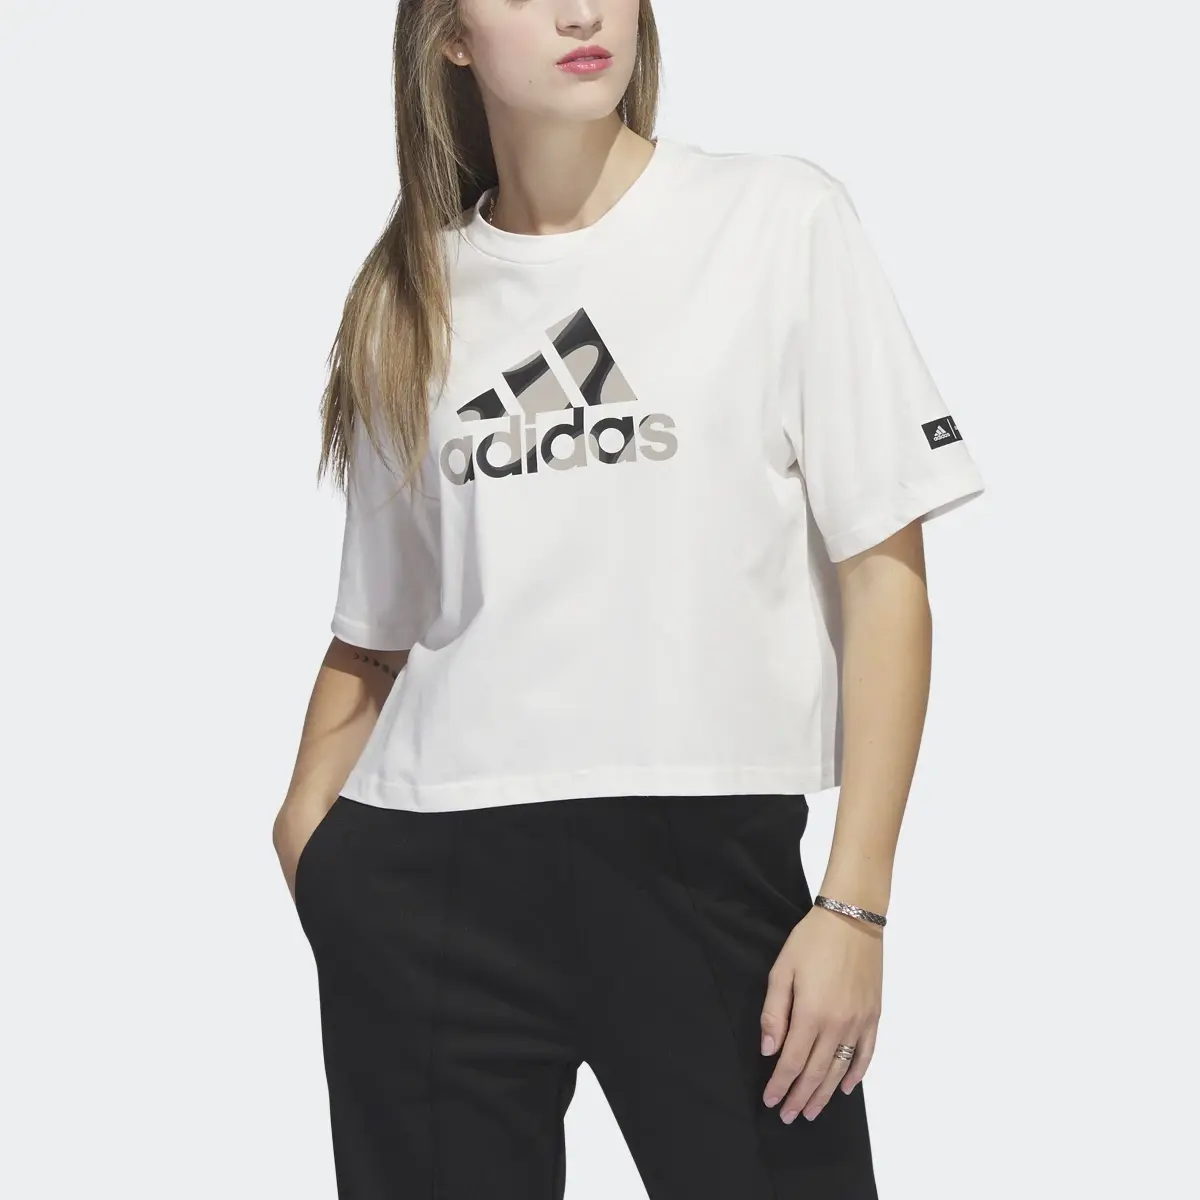 Adidas Marimekko Crop T-Shirt. 1